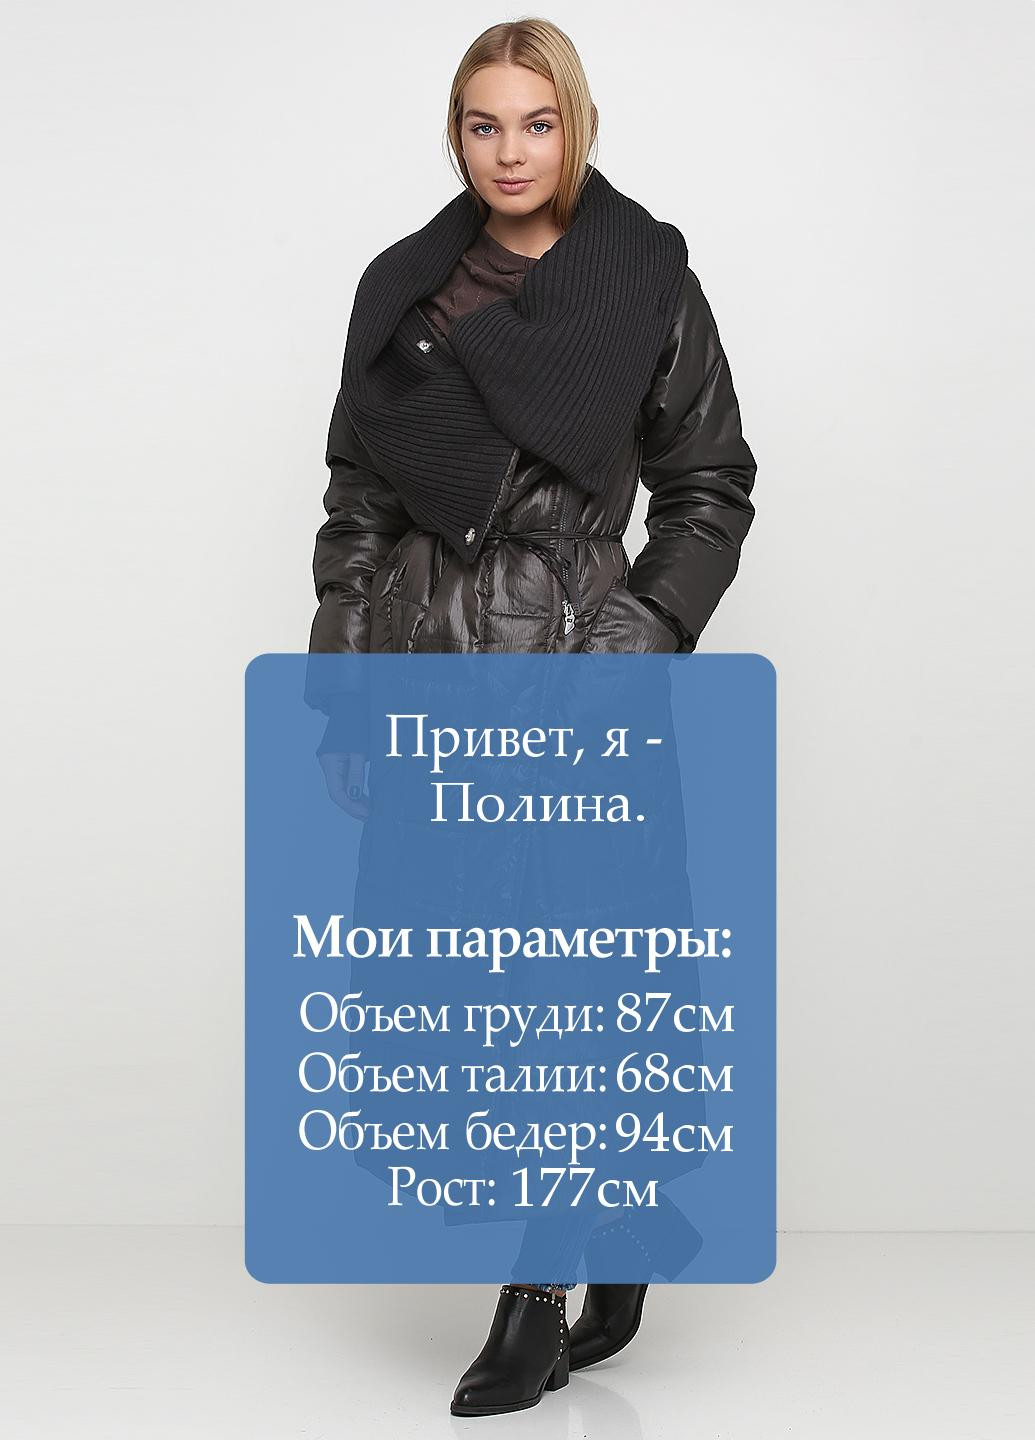 Грифельно-серая зимняя куртка Oblique